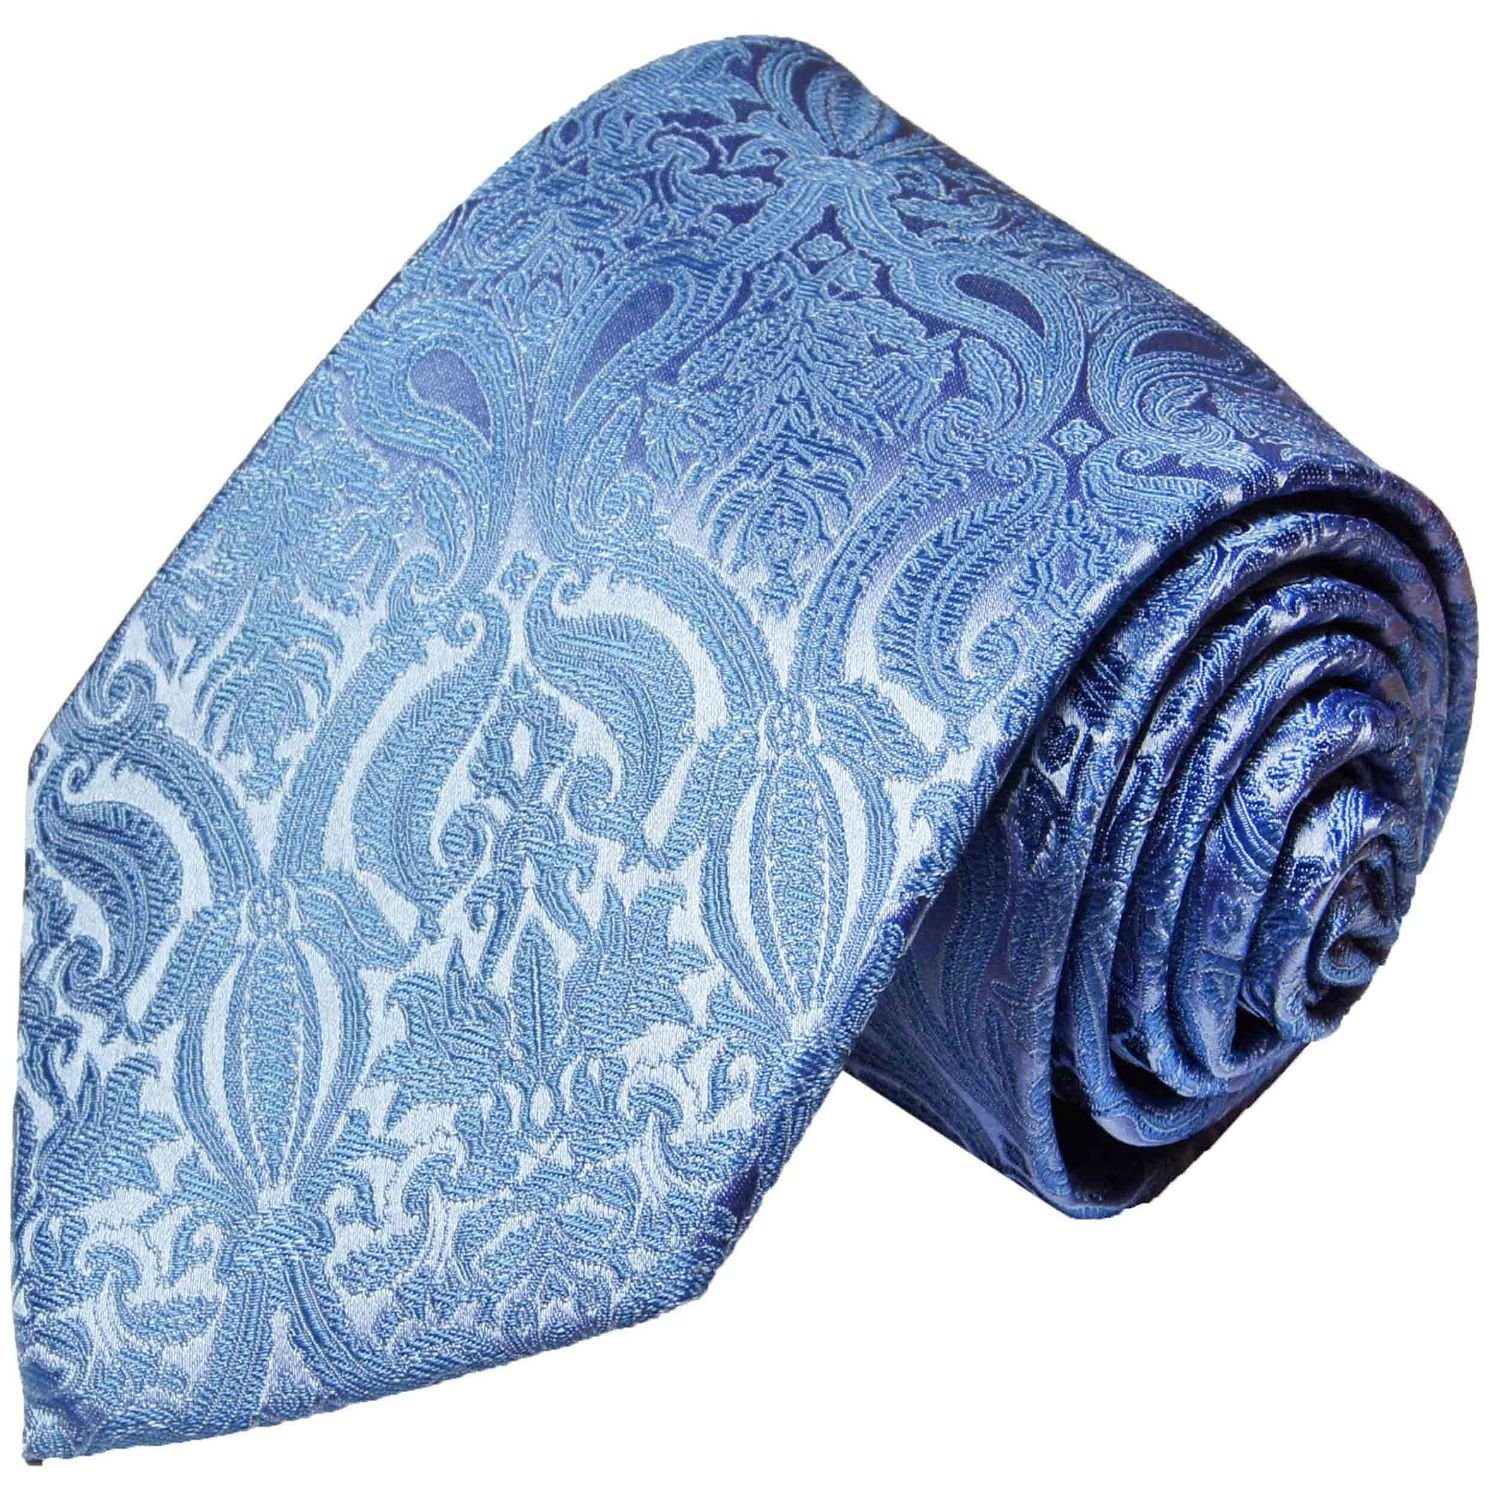 Herren Krawatten Paul Malone Krawatte Herren Seidenkrawatte Schlips modern uni paisley floral 100% Seide Schmal (6cm), blau 818